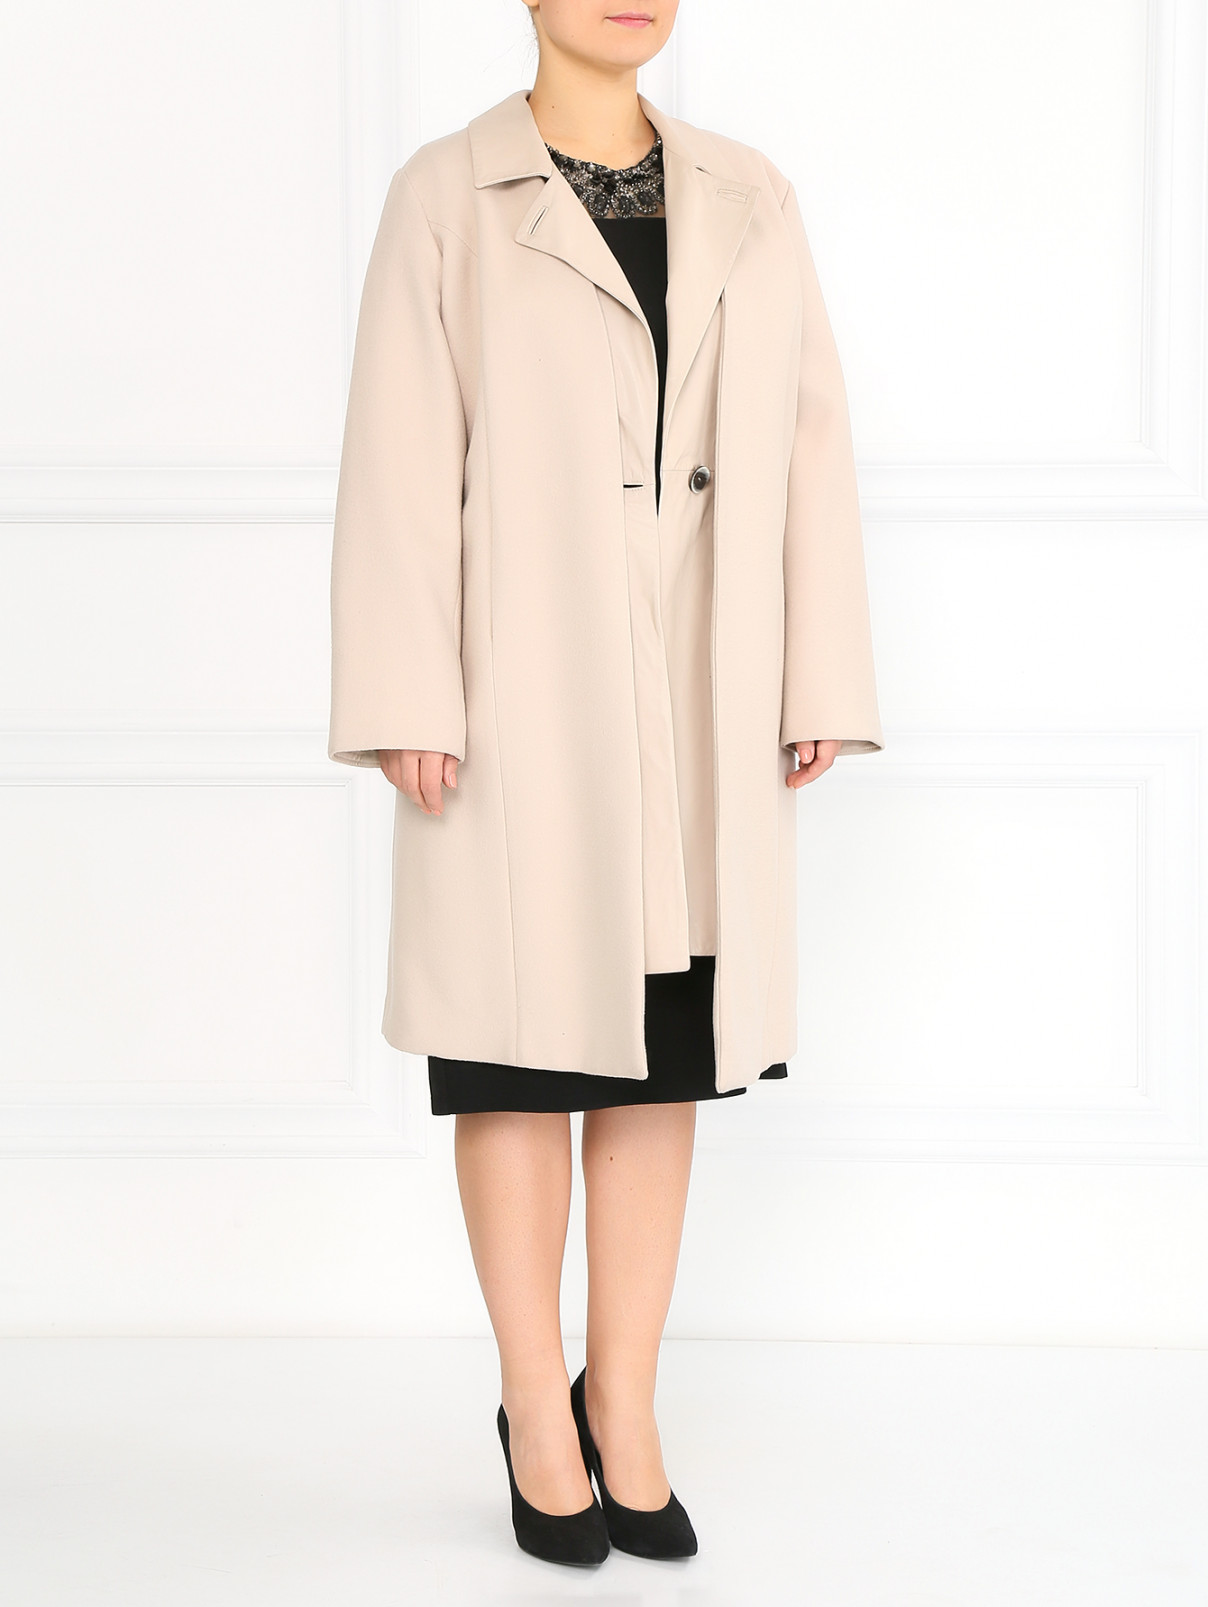 Пальто из шерсти с кожаным жилетом в комплекте Marina Rinaldi  –  Модель Общий вид  – Цвет:  Бежевый